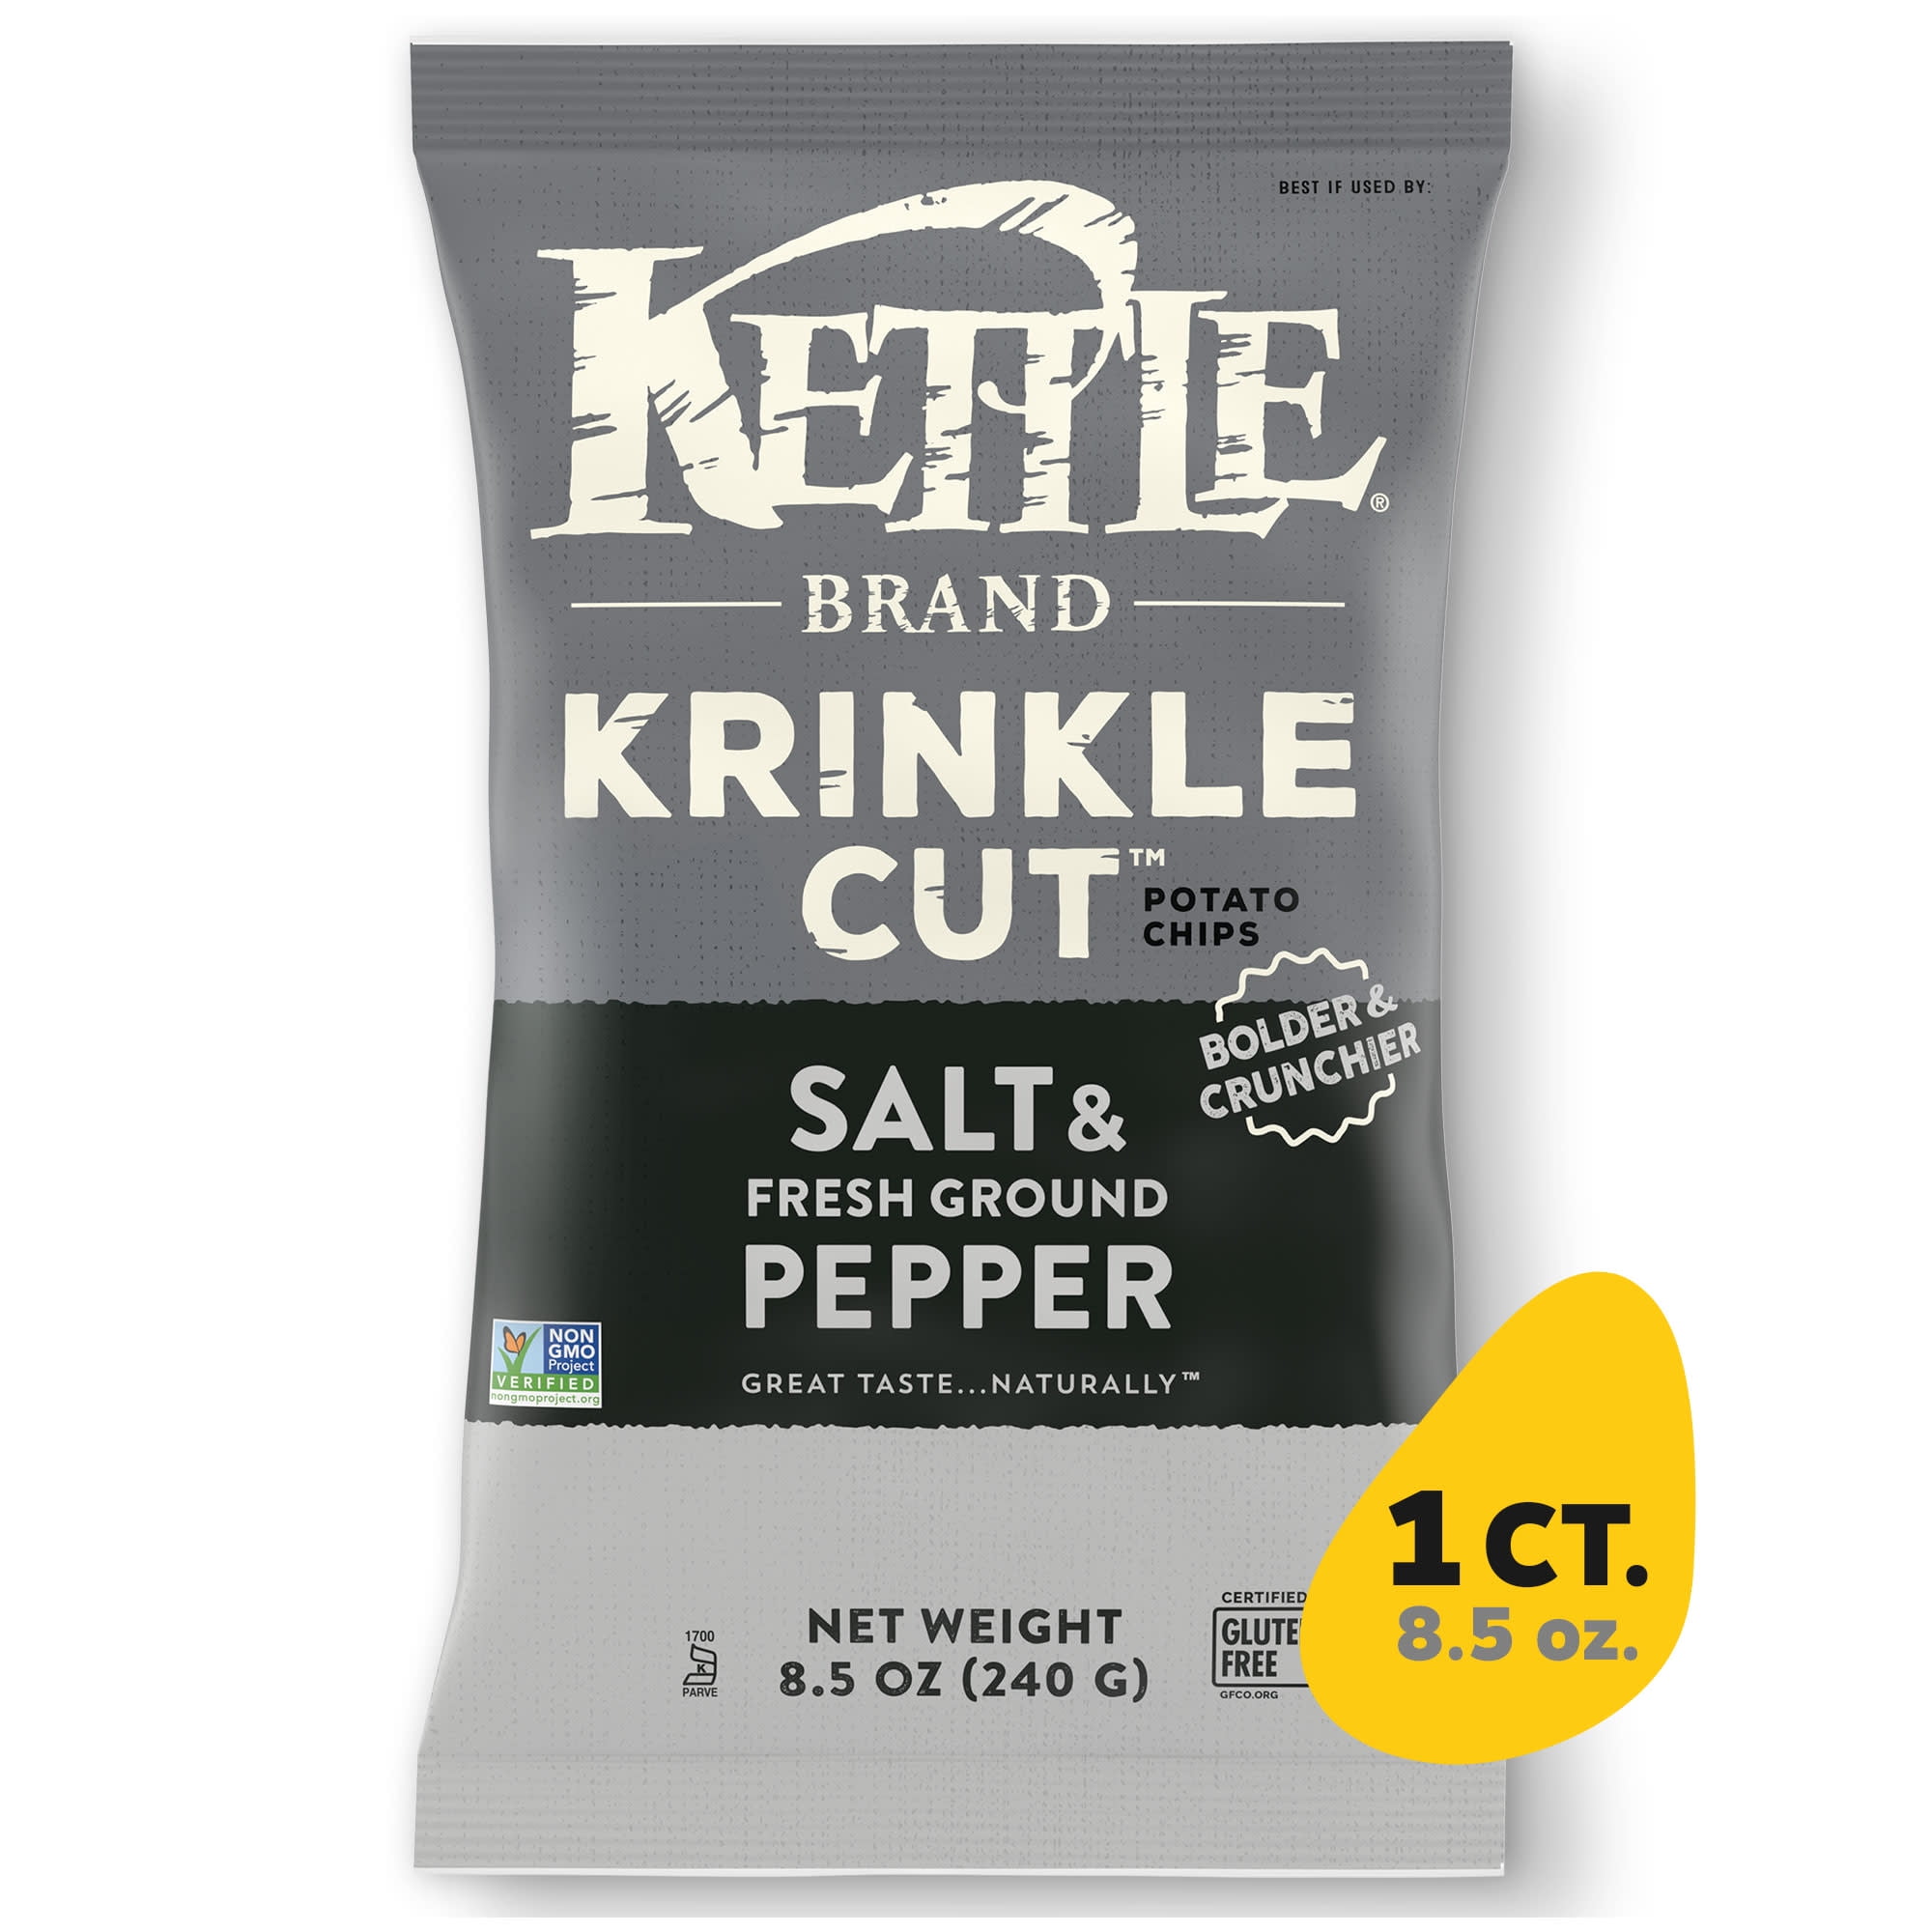 Kettle Brand Potato Chips, Krinkle Cut, Salt & Fresh Ground Pepper Kettle Chips, 8.5 oz